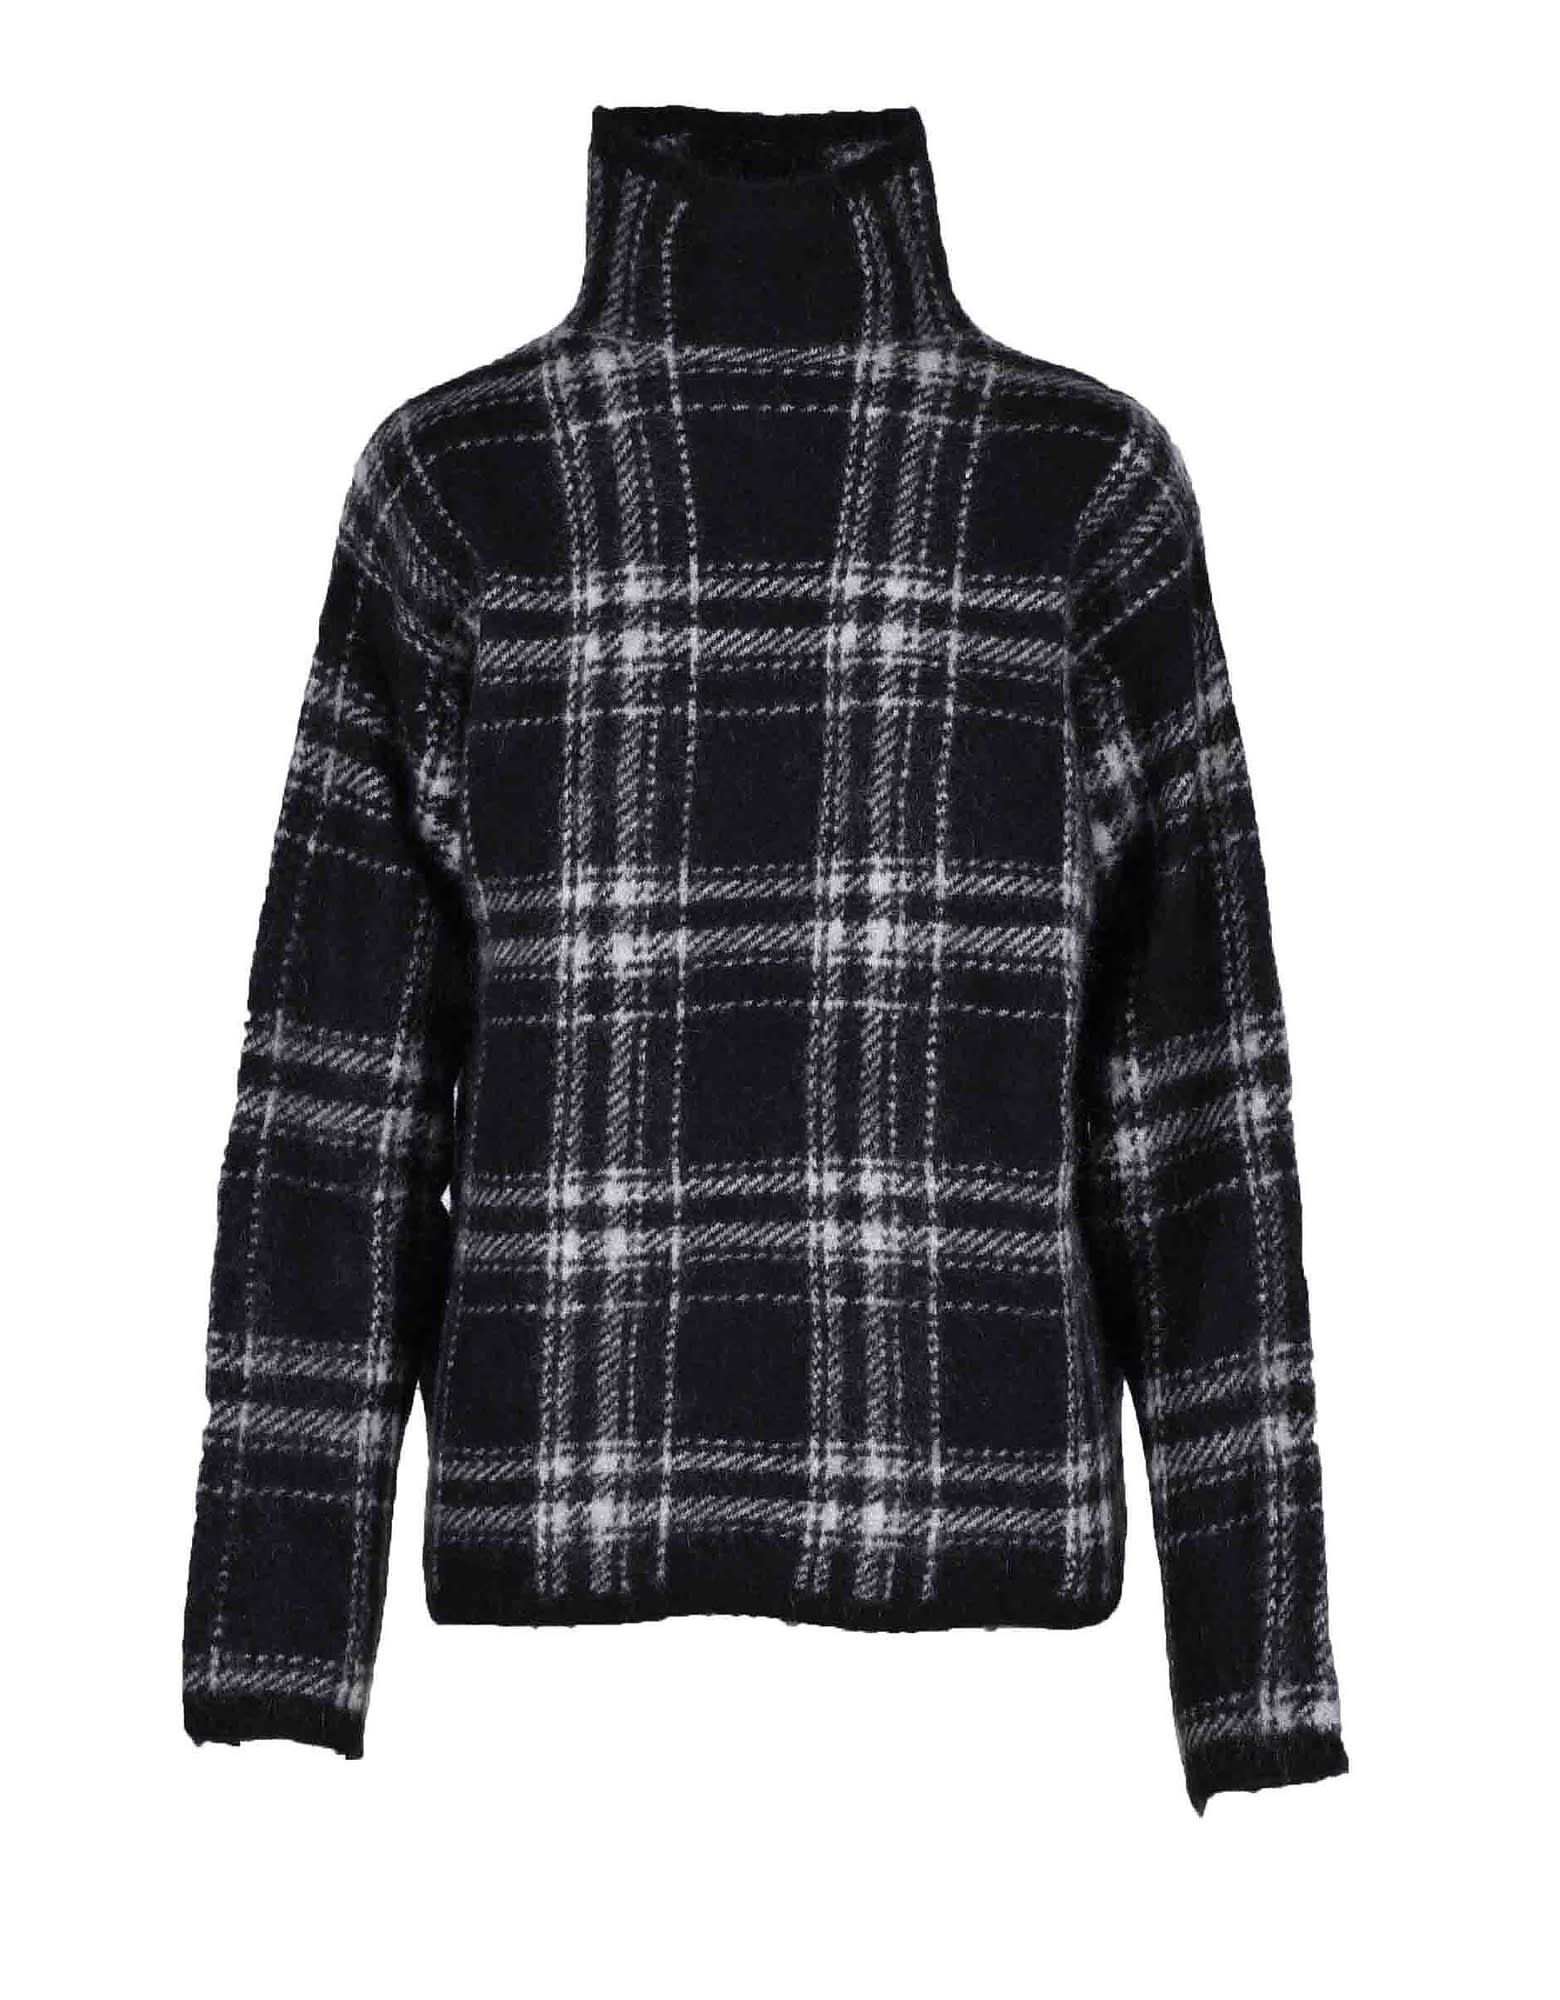 Max Mara Womens Black / Gray Sweater